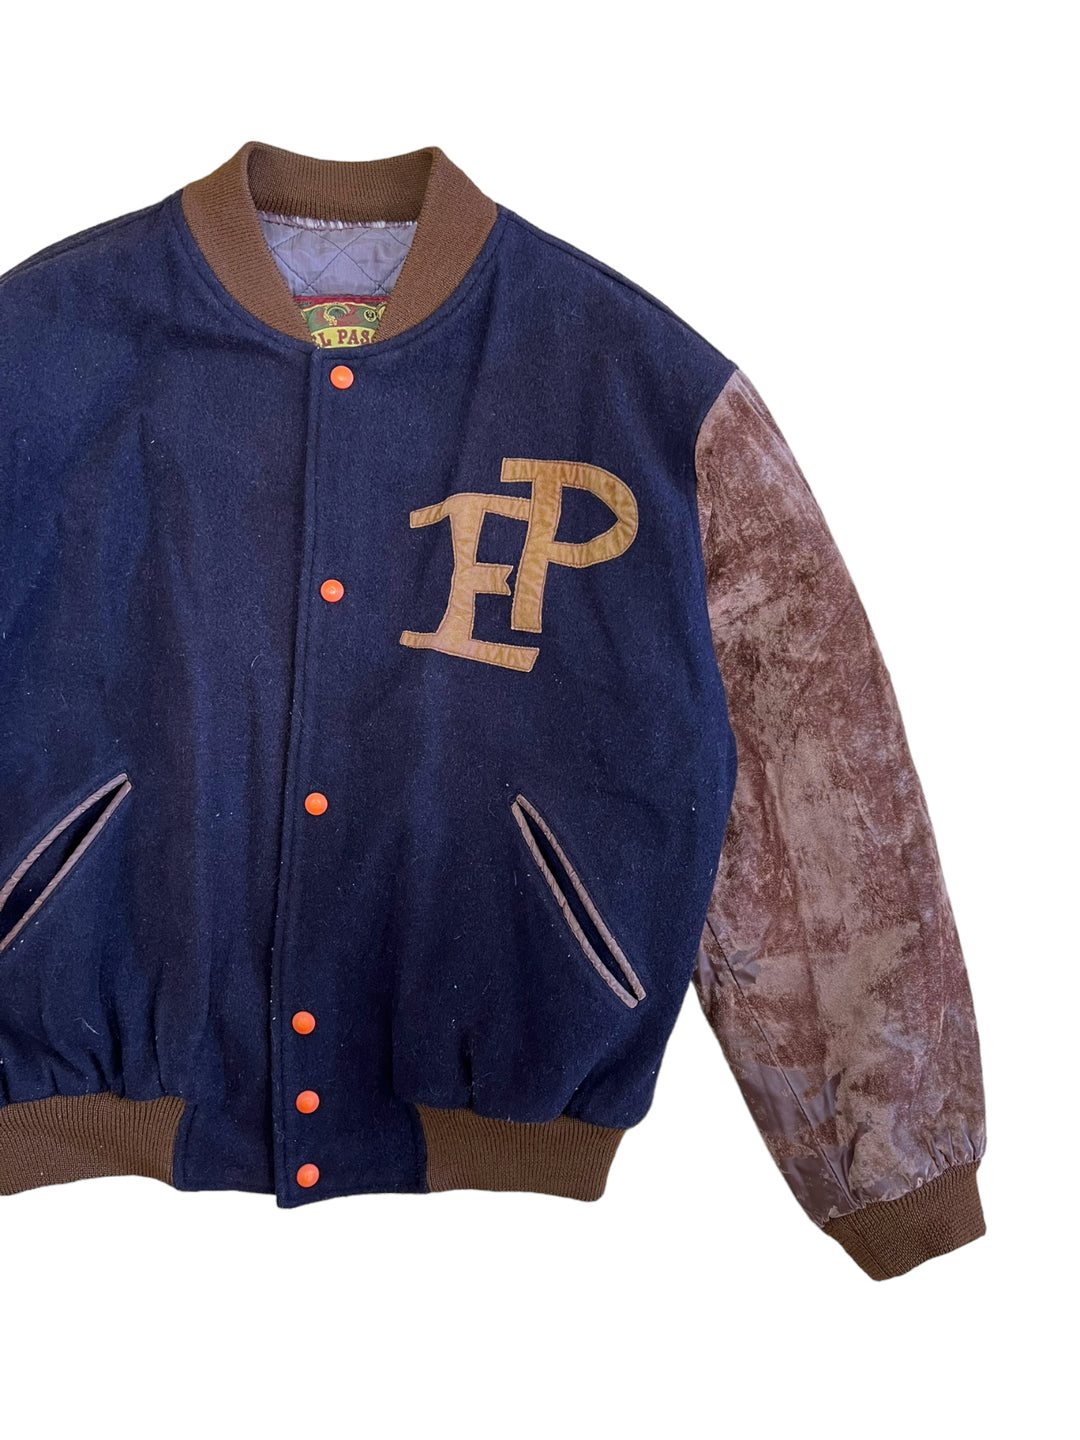 El Paso Vintage Wool Suede Leather Sleeves Varsity Jacket Men’s Large